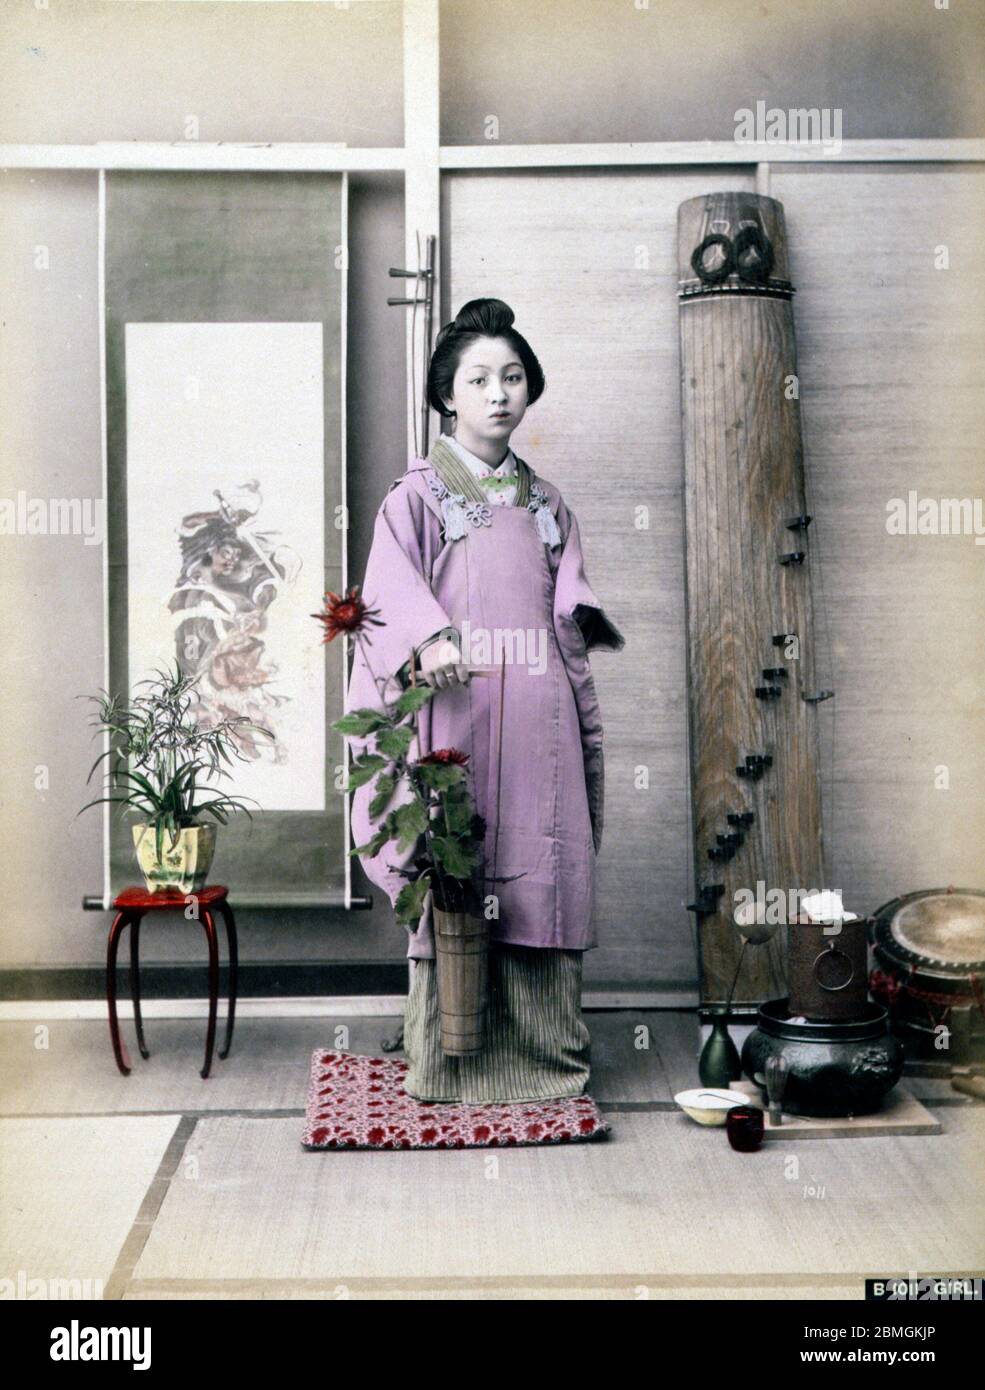 [ 1880er Japan - Japanische Frau mit Blumen ] - EINE Frau im Kimono, die eine Bambusvase mit Blumen hält. Ein Hibachi-Brazier, eine Taiko-Trommel, die als Ootsutsumi bekannt ist, und eine Koto, eine Art Harfe, sind auf der Rückseite sichtbar. Vintage Albumin-Fotografie aus dem 19. Jahrhundert. Stockfoto